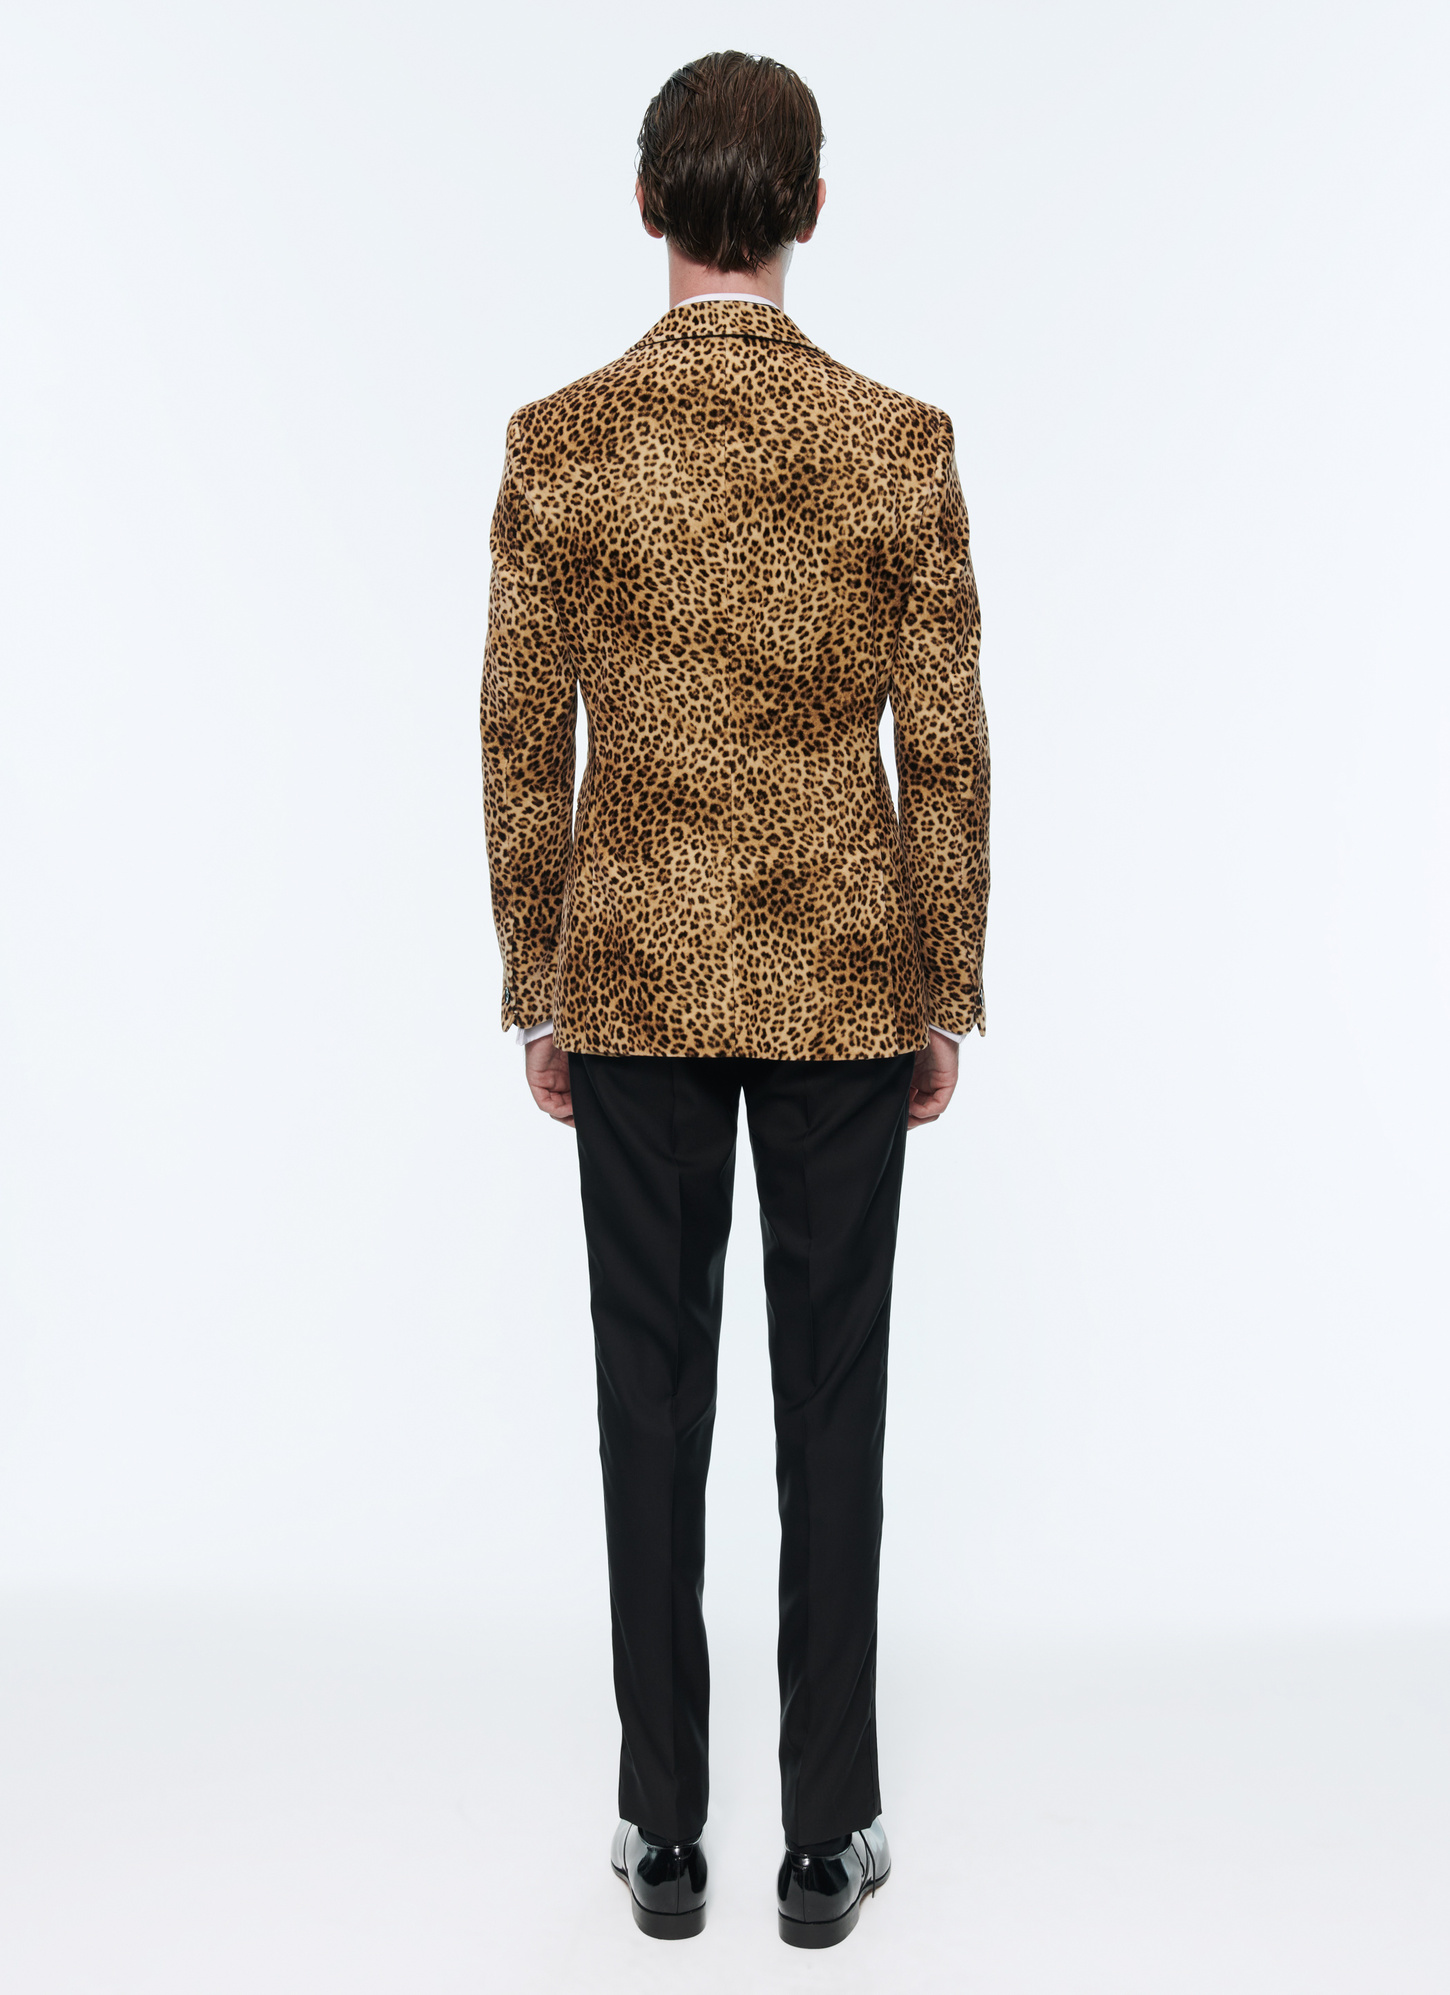 Leopard Print Velvet Tuxedo for Men - Fursac S3AVOP-AC61-11